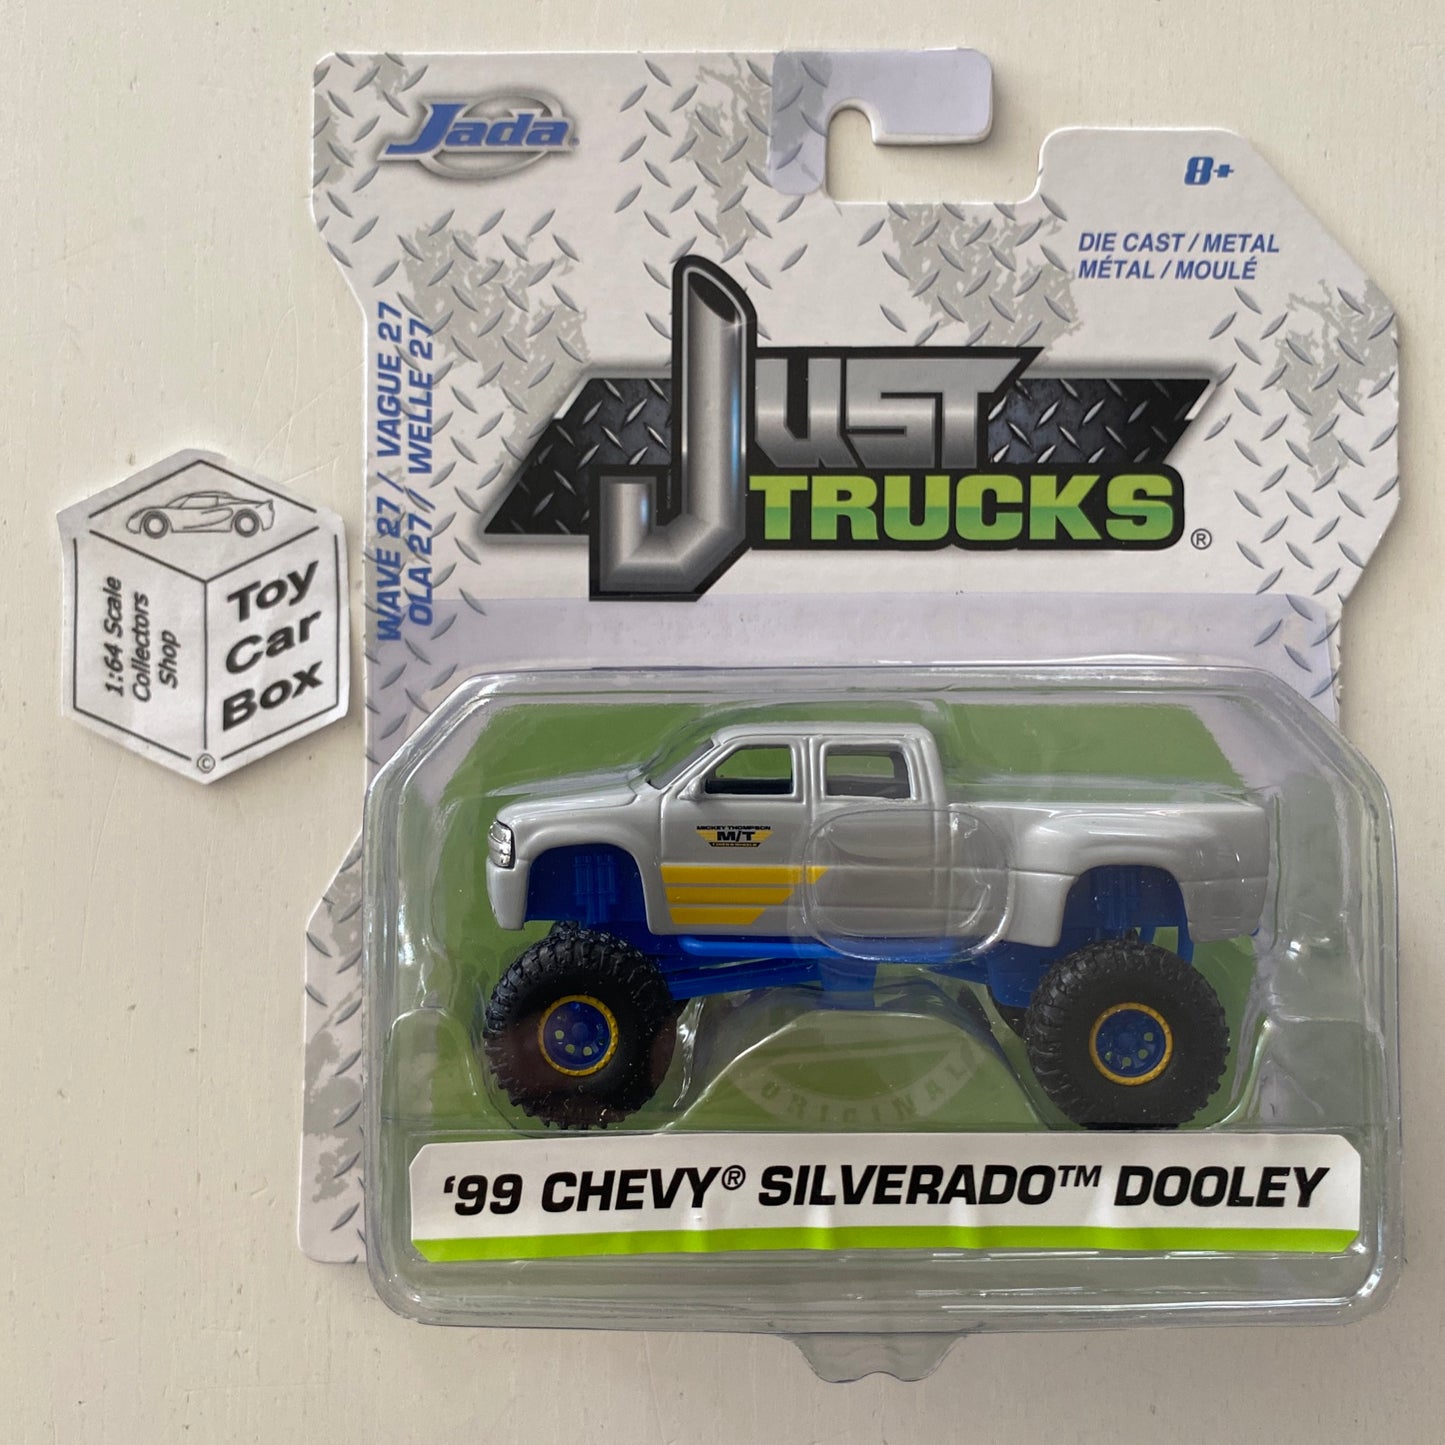 JADA Just Trucks - ‘99 Chevy Silverado Dooley (1:64 Scale* Wave 27) E94g